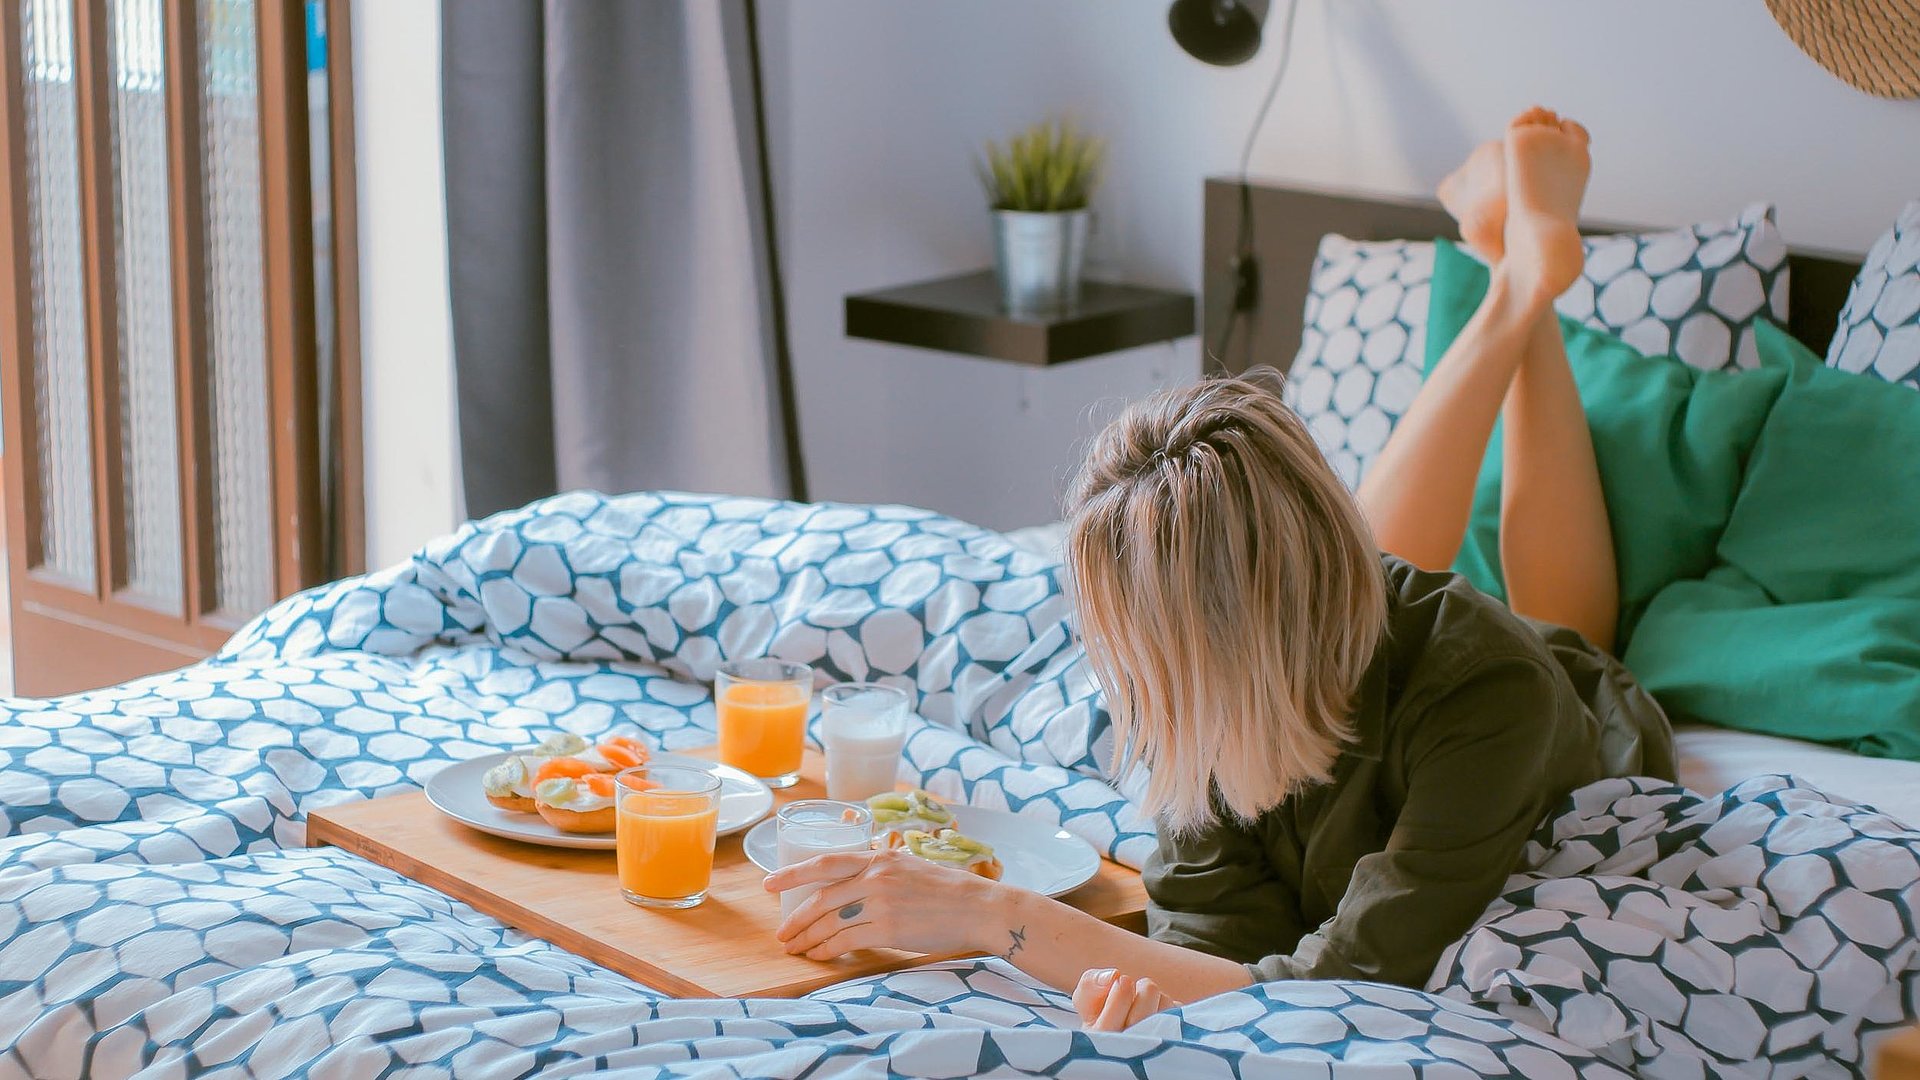 Ferienwohnungen und Appartements für Gruppen in Unterfranken -  junge blonde Frau liegt im Bett neben einer Frühstücksplatte, gefüllt mit O-Saft, Milch und belegten Brötchen